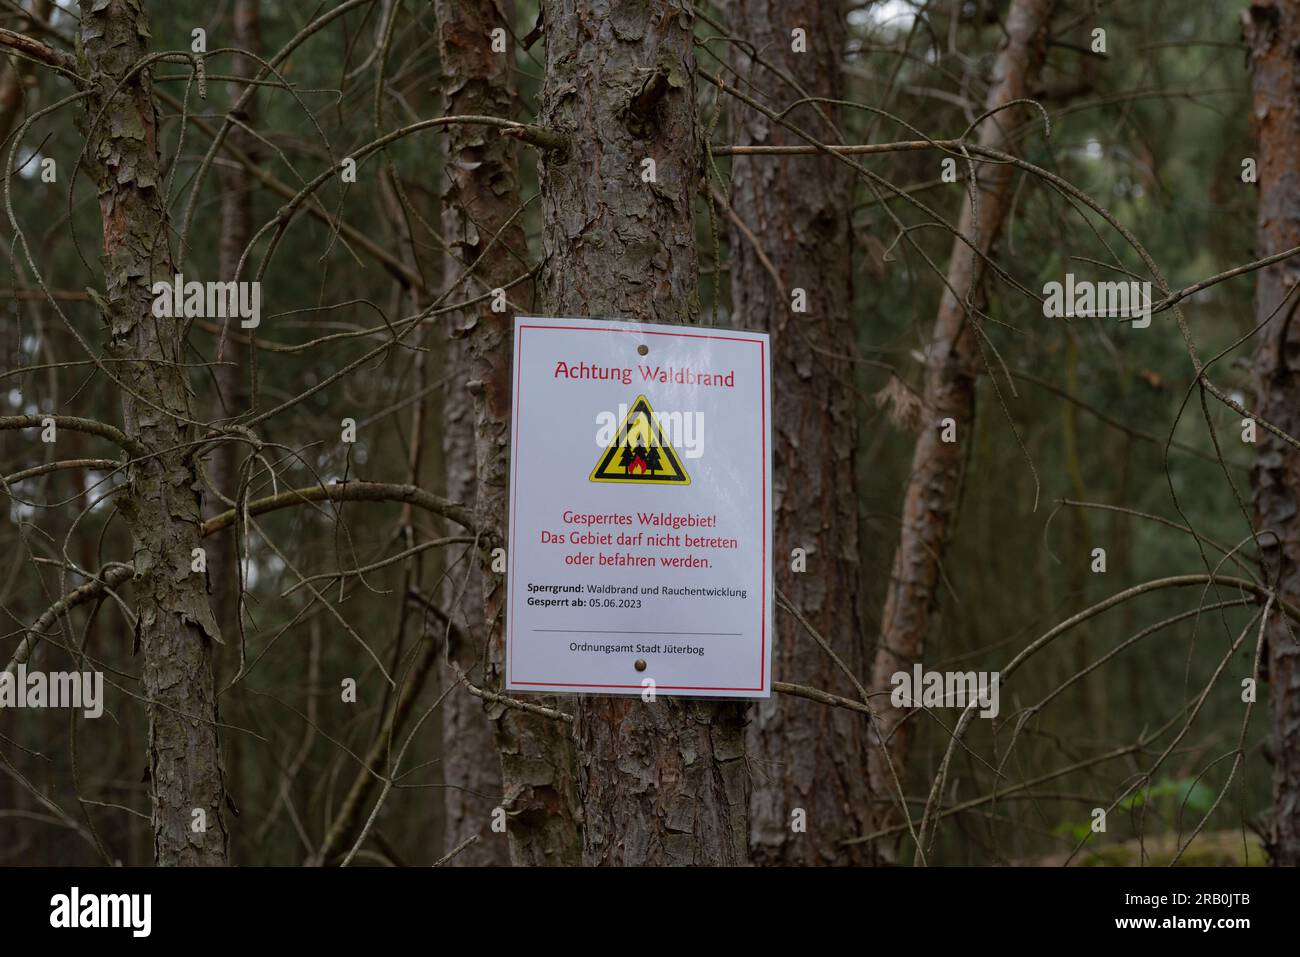 Entre Jüterbog et Felgentreu, juin 6 2023, Allemagne, des panneaux avec des inscriptions allemandes indiquent que tous les sentiers de randonnée sont fermés en raison du danger élevé pour la vie de l'incendie de forêt Banque D'Images